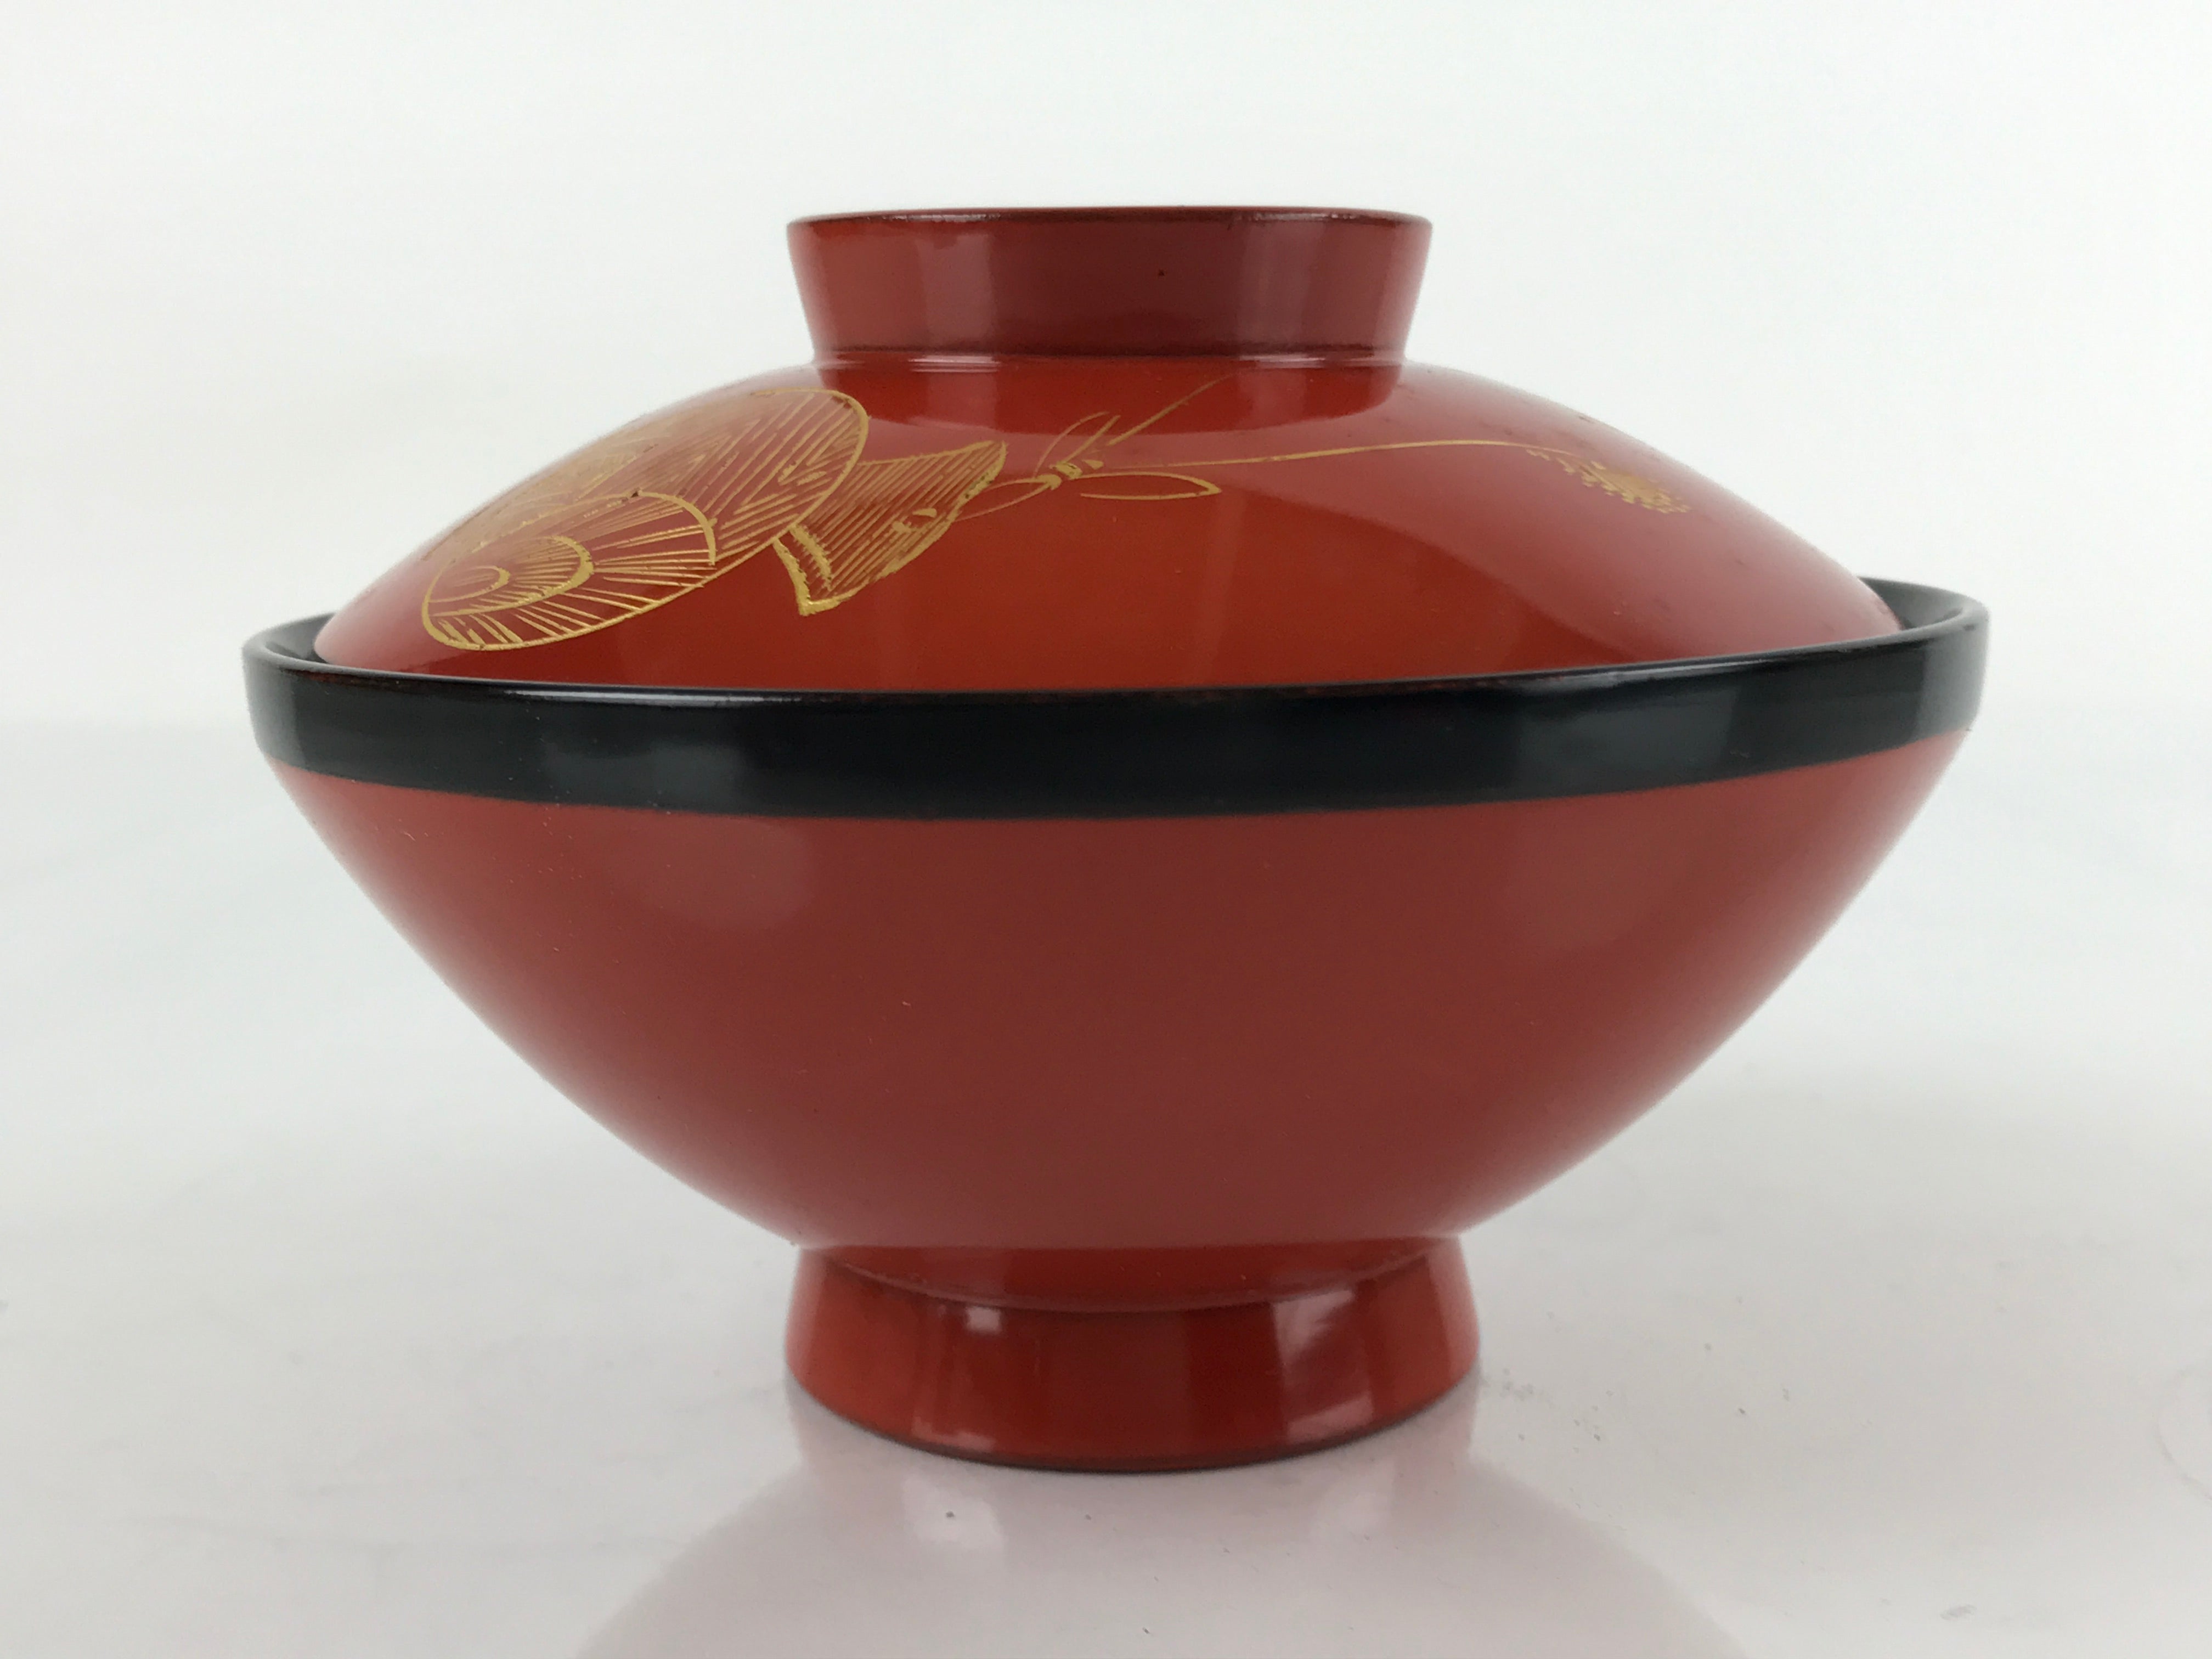 Japanese Lacquered Wooden Lidded Bowl Nimonowan Vtg Makie Red Black LB108